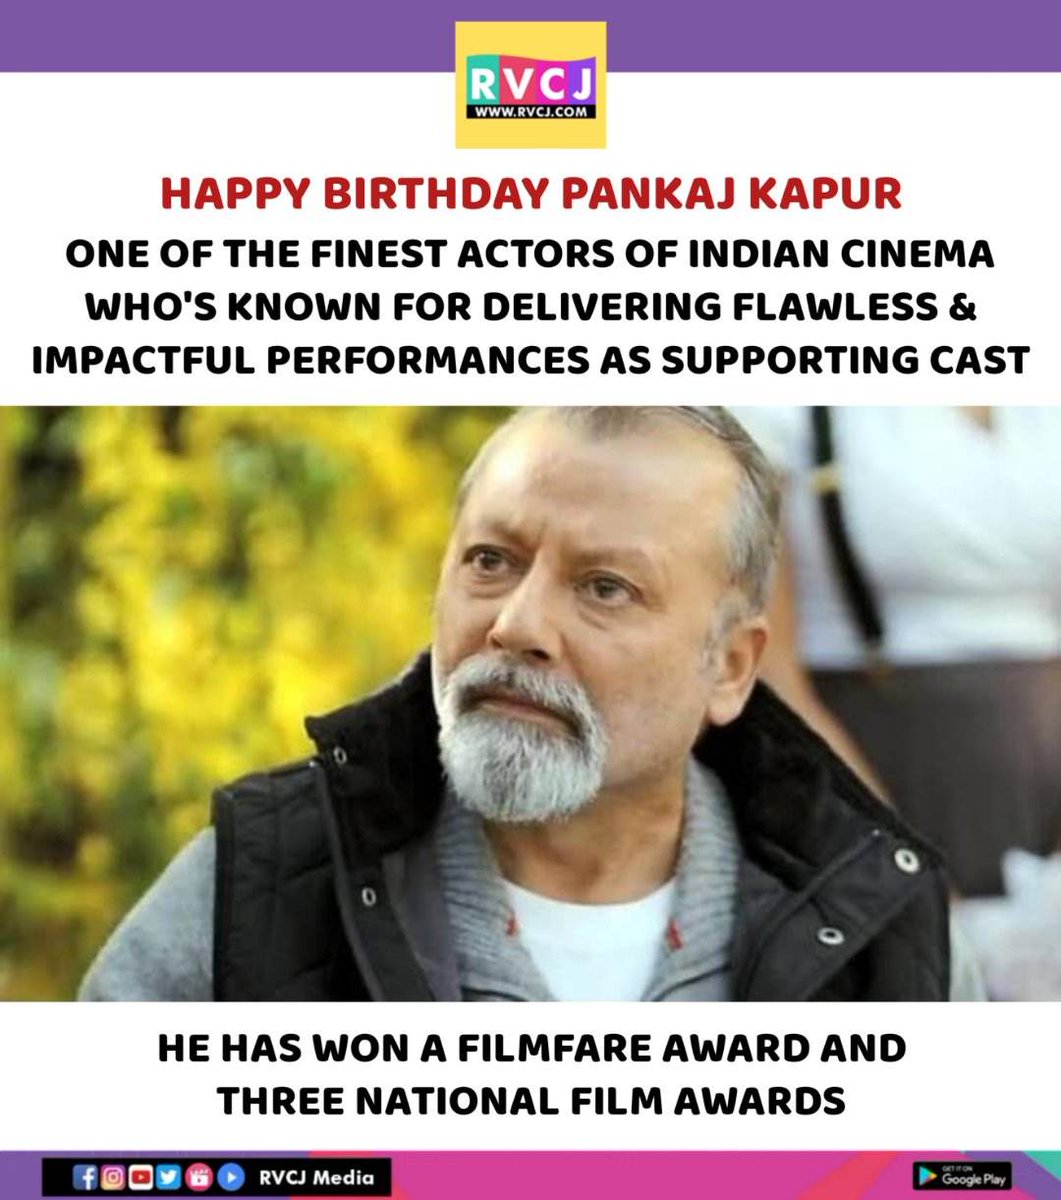 Happy Birthday Pankaj Kapur 

#pankajkapur #rvcjinsta #rvcjmovies